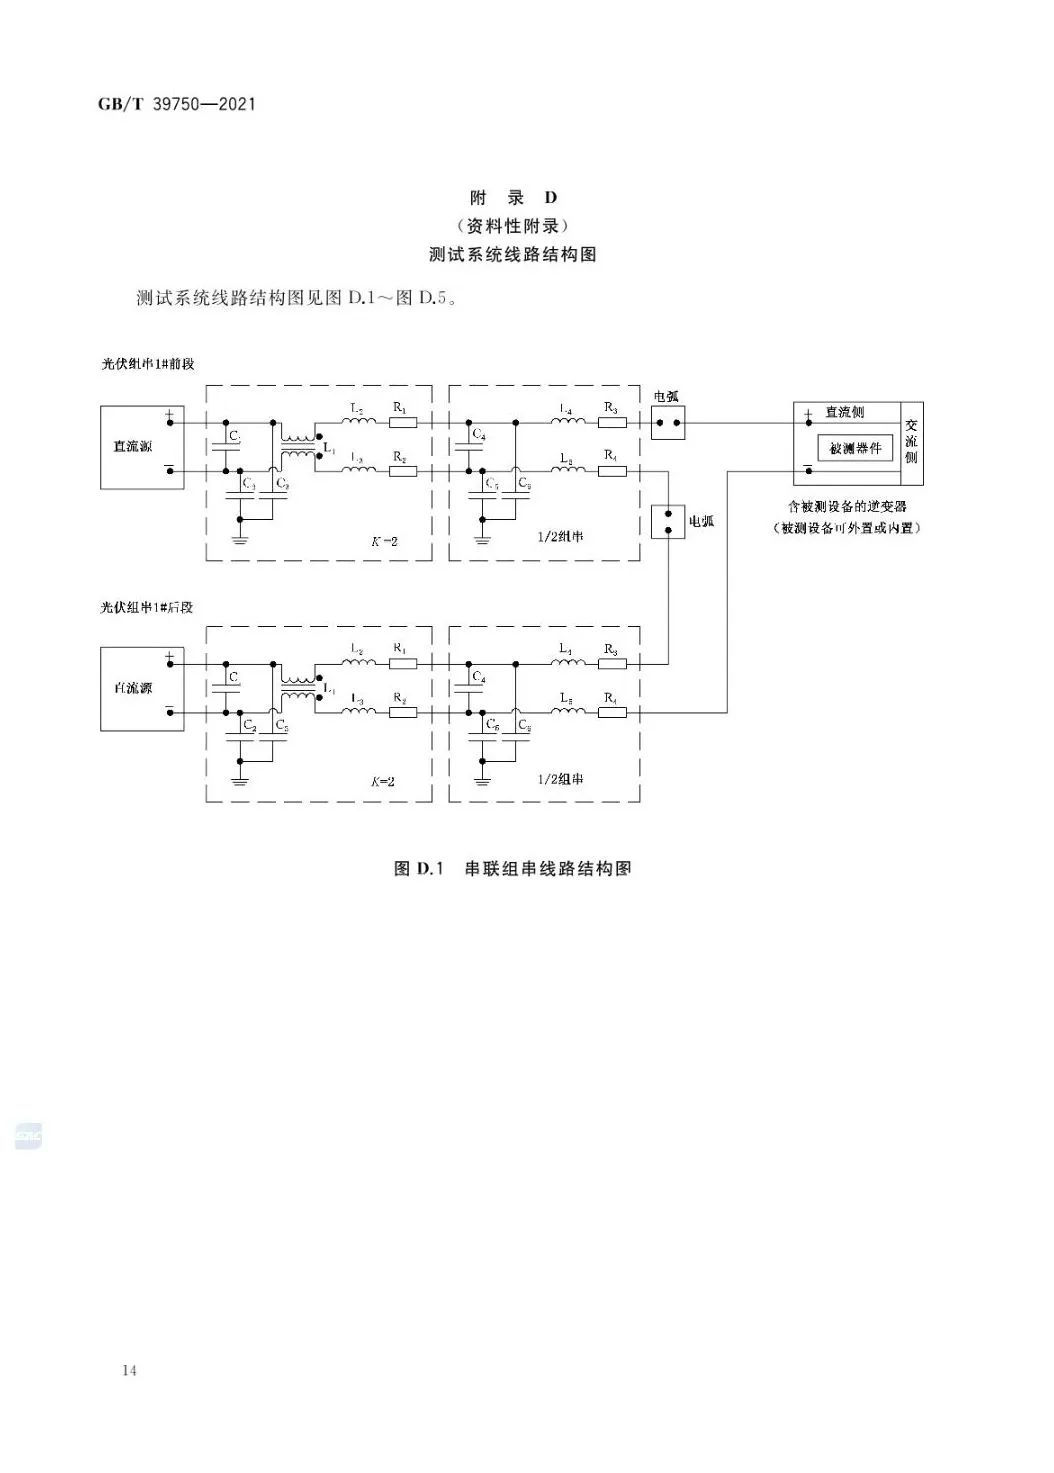 【规范图书馆】光伏发电系统直流电弧保护技术要求GB/T 39750-2021